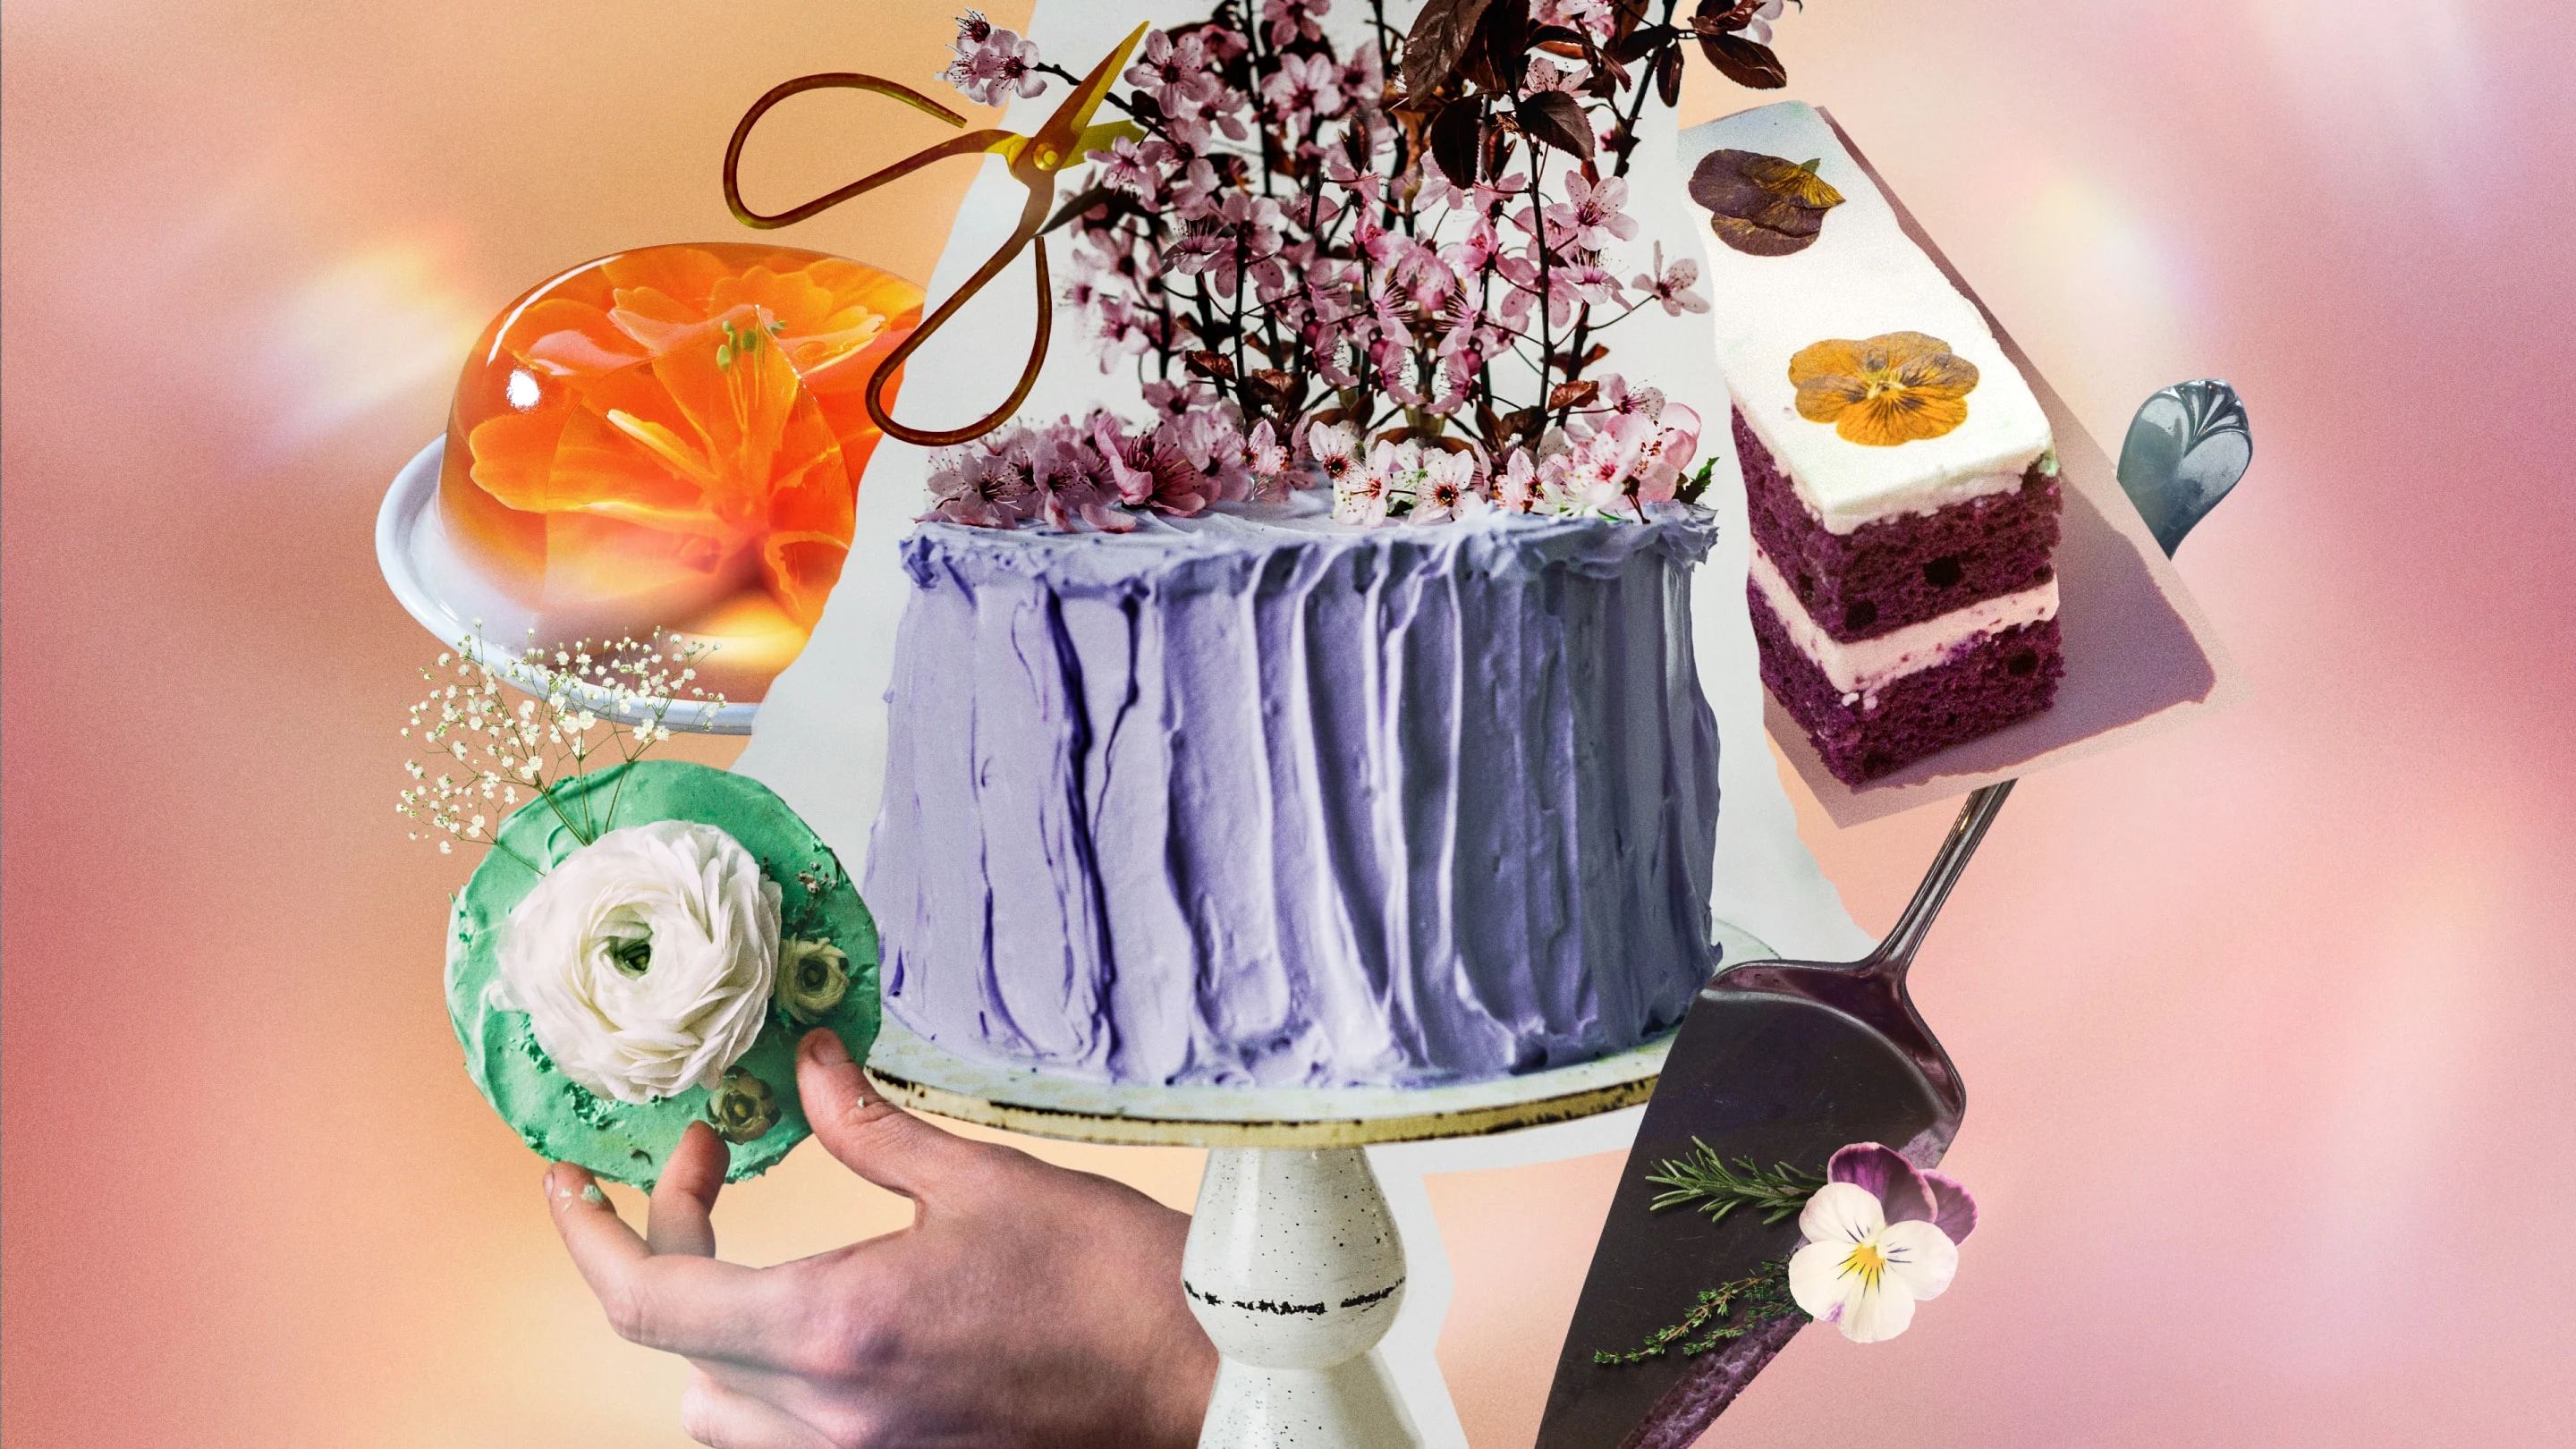 Uma variedade de bolos e fatias de bolo com flores silvestres adornadas em vários estilos.